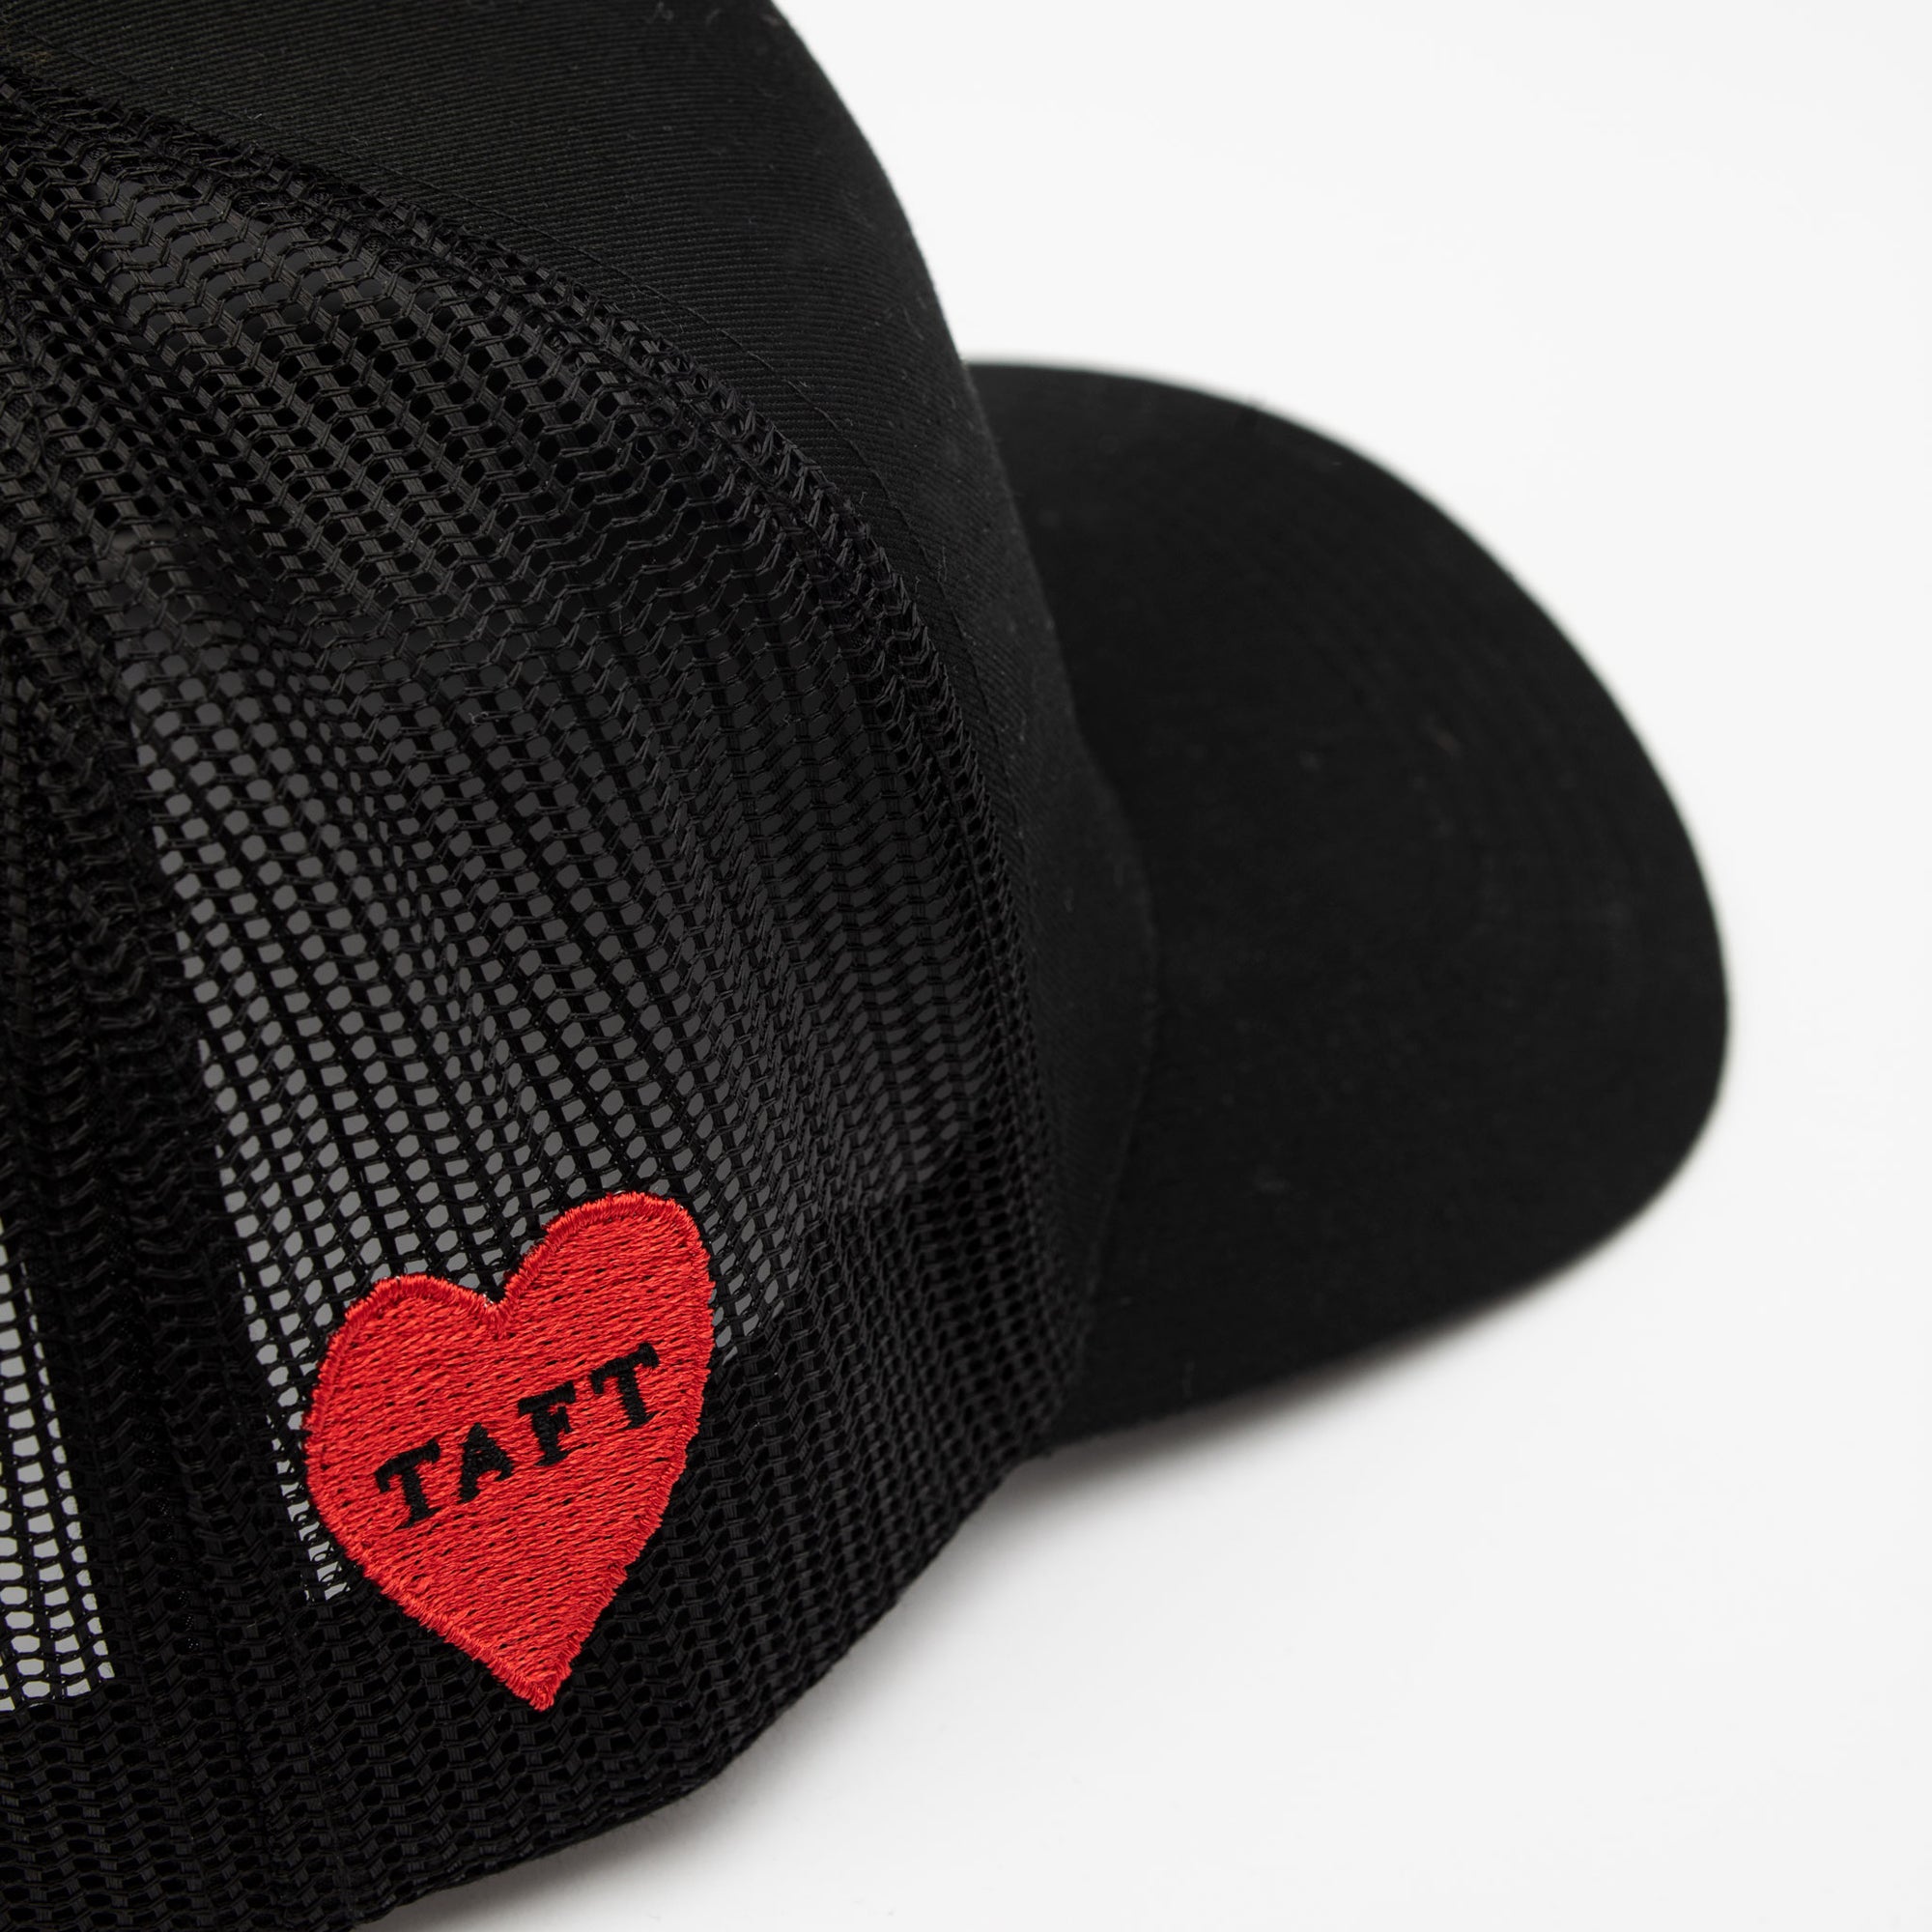 Take Care Hat in Black